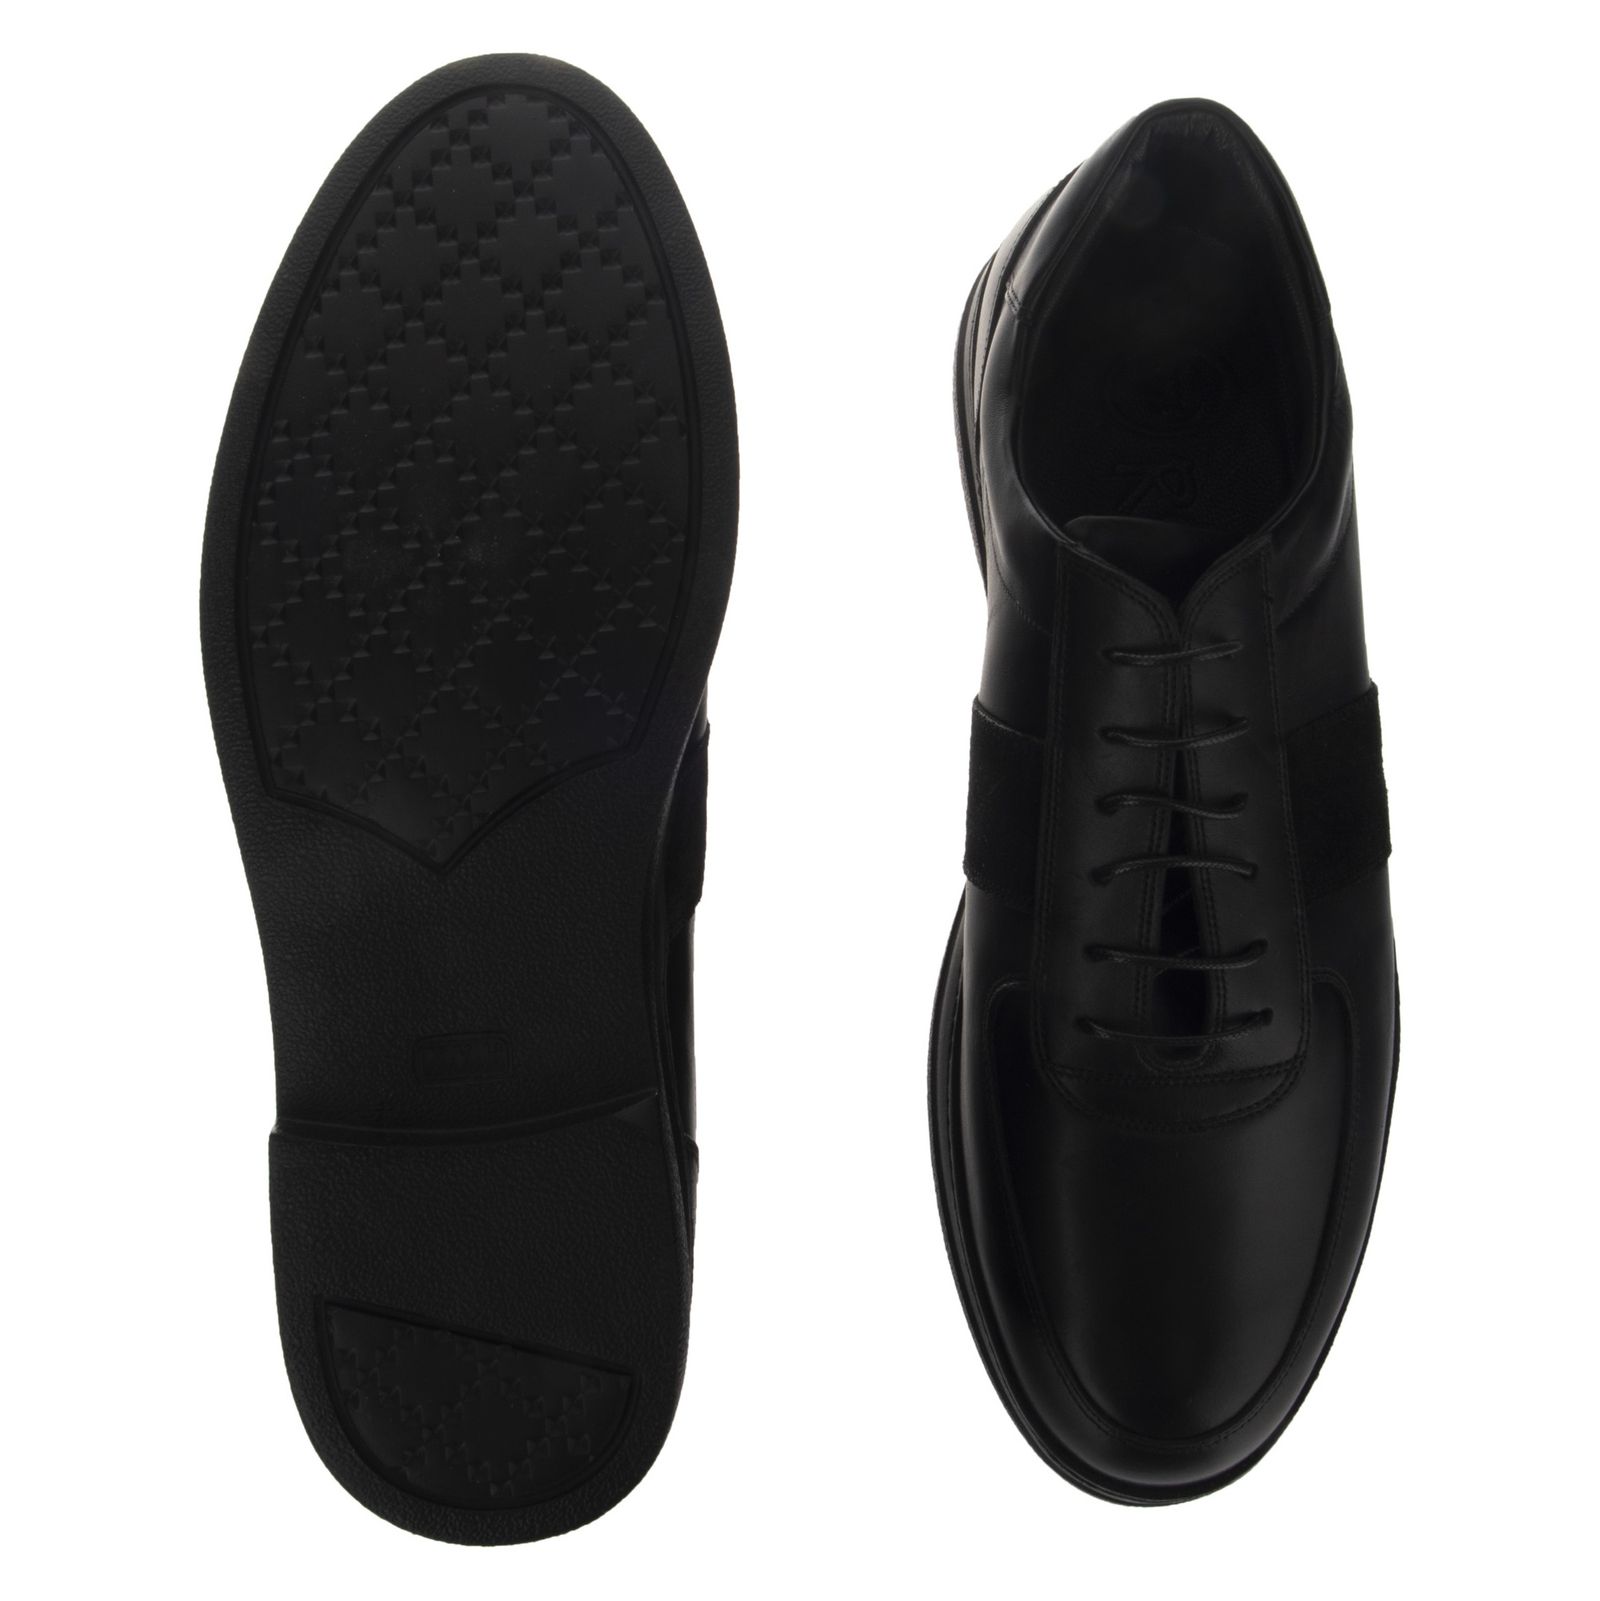 کفش روزمره مردانه اورسی مدل 919-27 - مشکی - 4